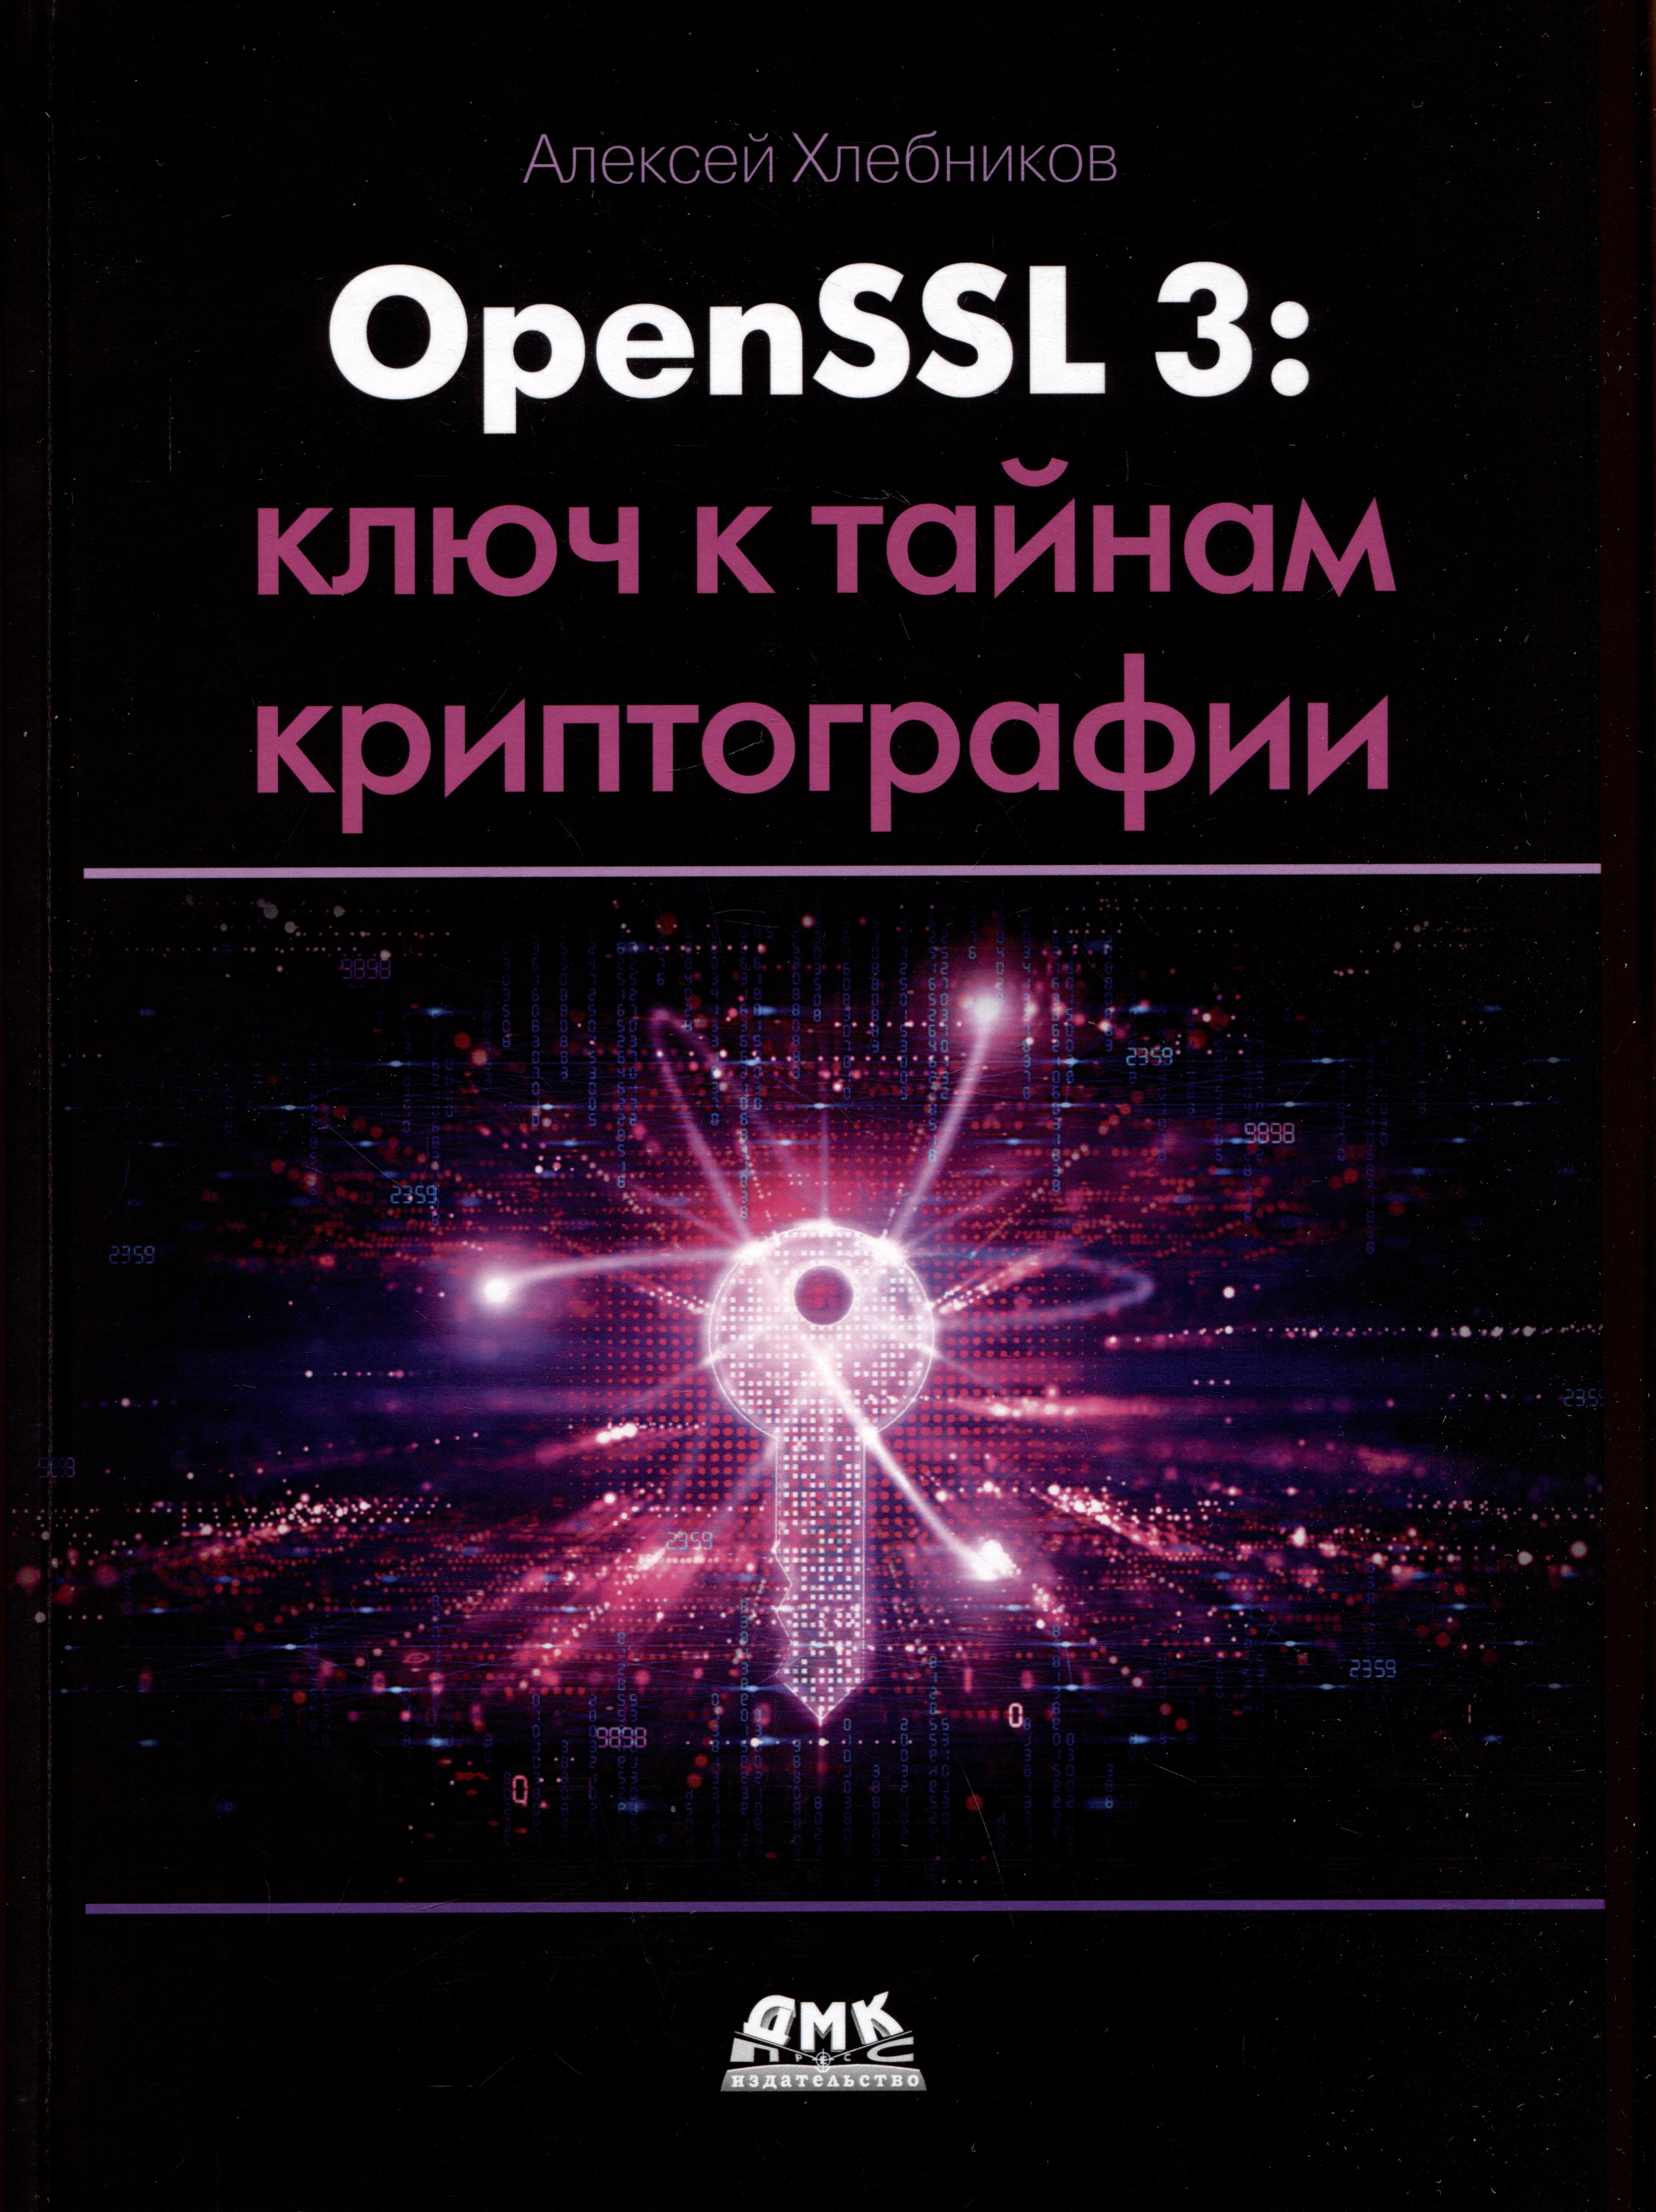 Хлебников Алексей - OPENSSL 3: ключ к тайнам криптографии